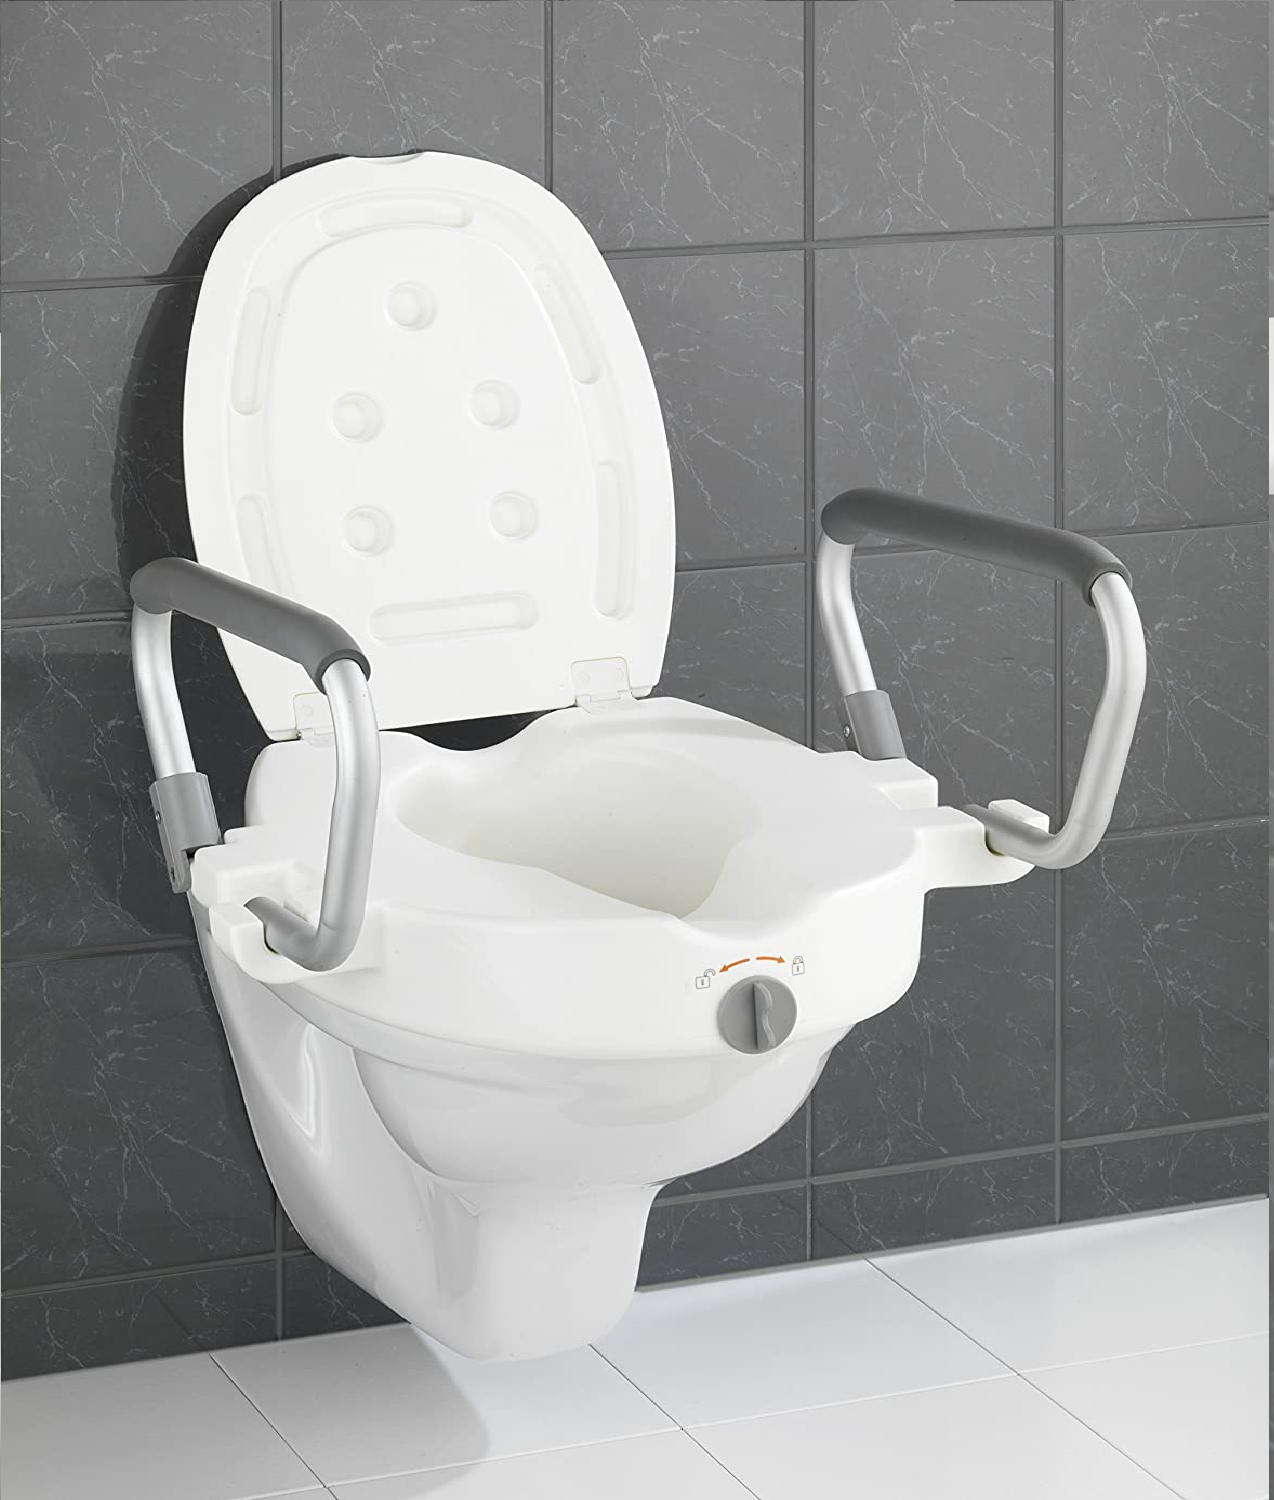 WC-Sitz Erhöhung mit Stützgriffen Secura - Toilettensitzerhöhung, Kunststoff, 55 x 37.5 x 47.5 cm, Weiß